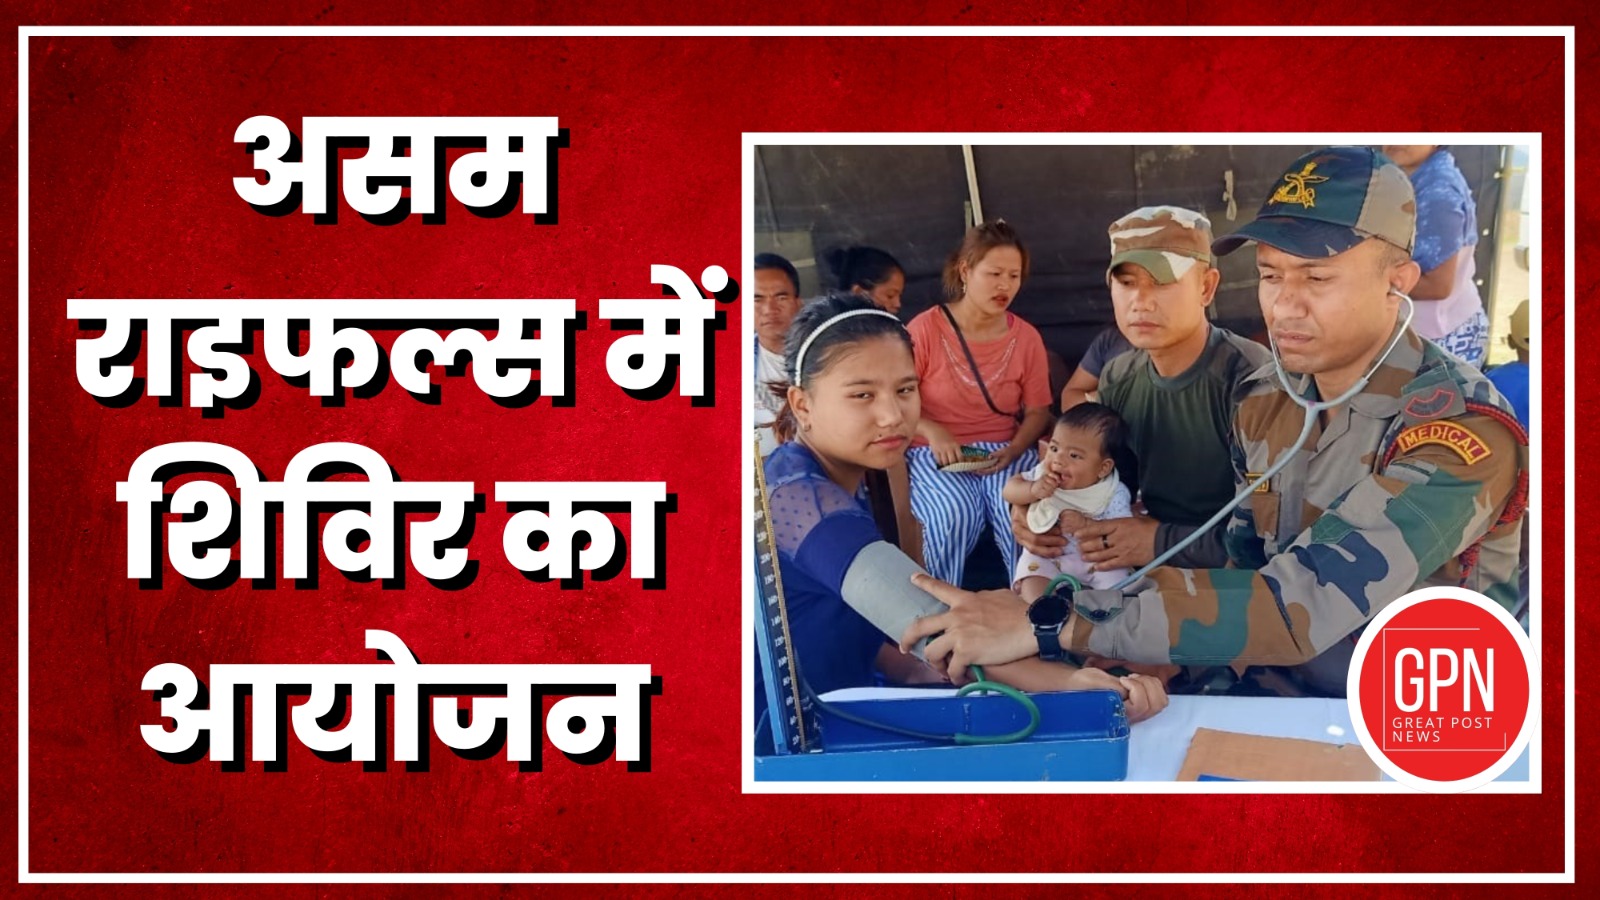 Mizoram| असम राइफल्स ने 7 अप्रैल को चिकित्सा शिविर का आयोजन किया। Great Post News